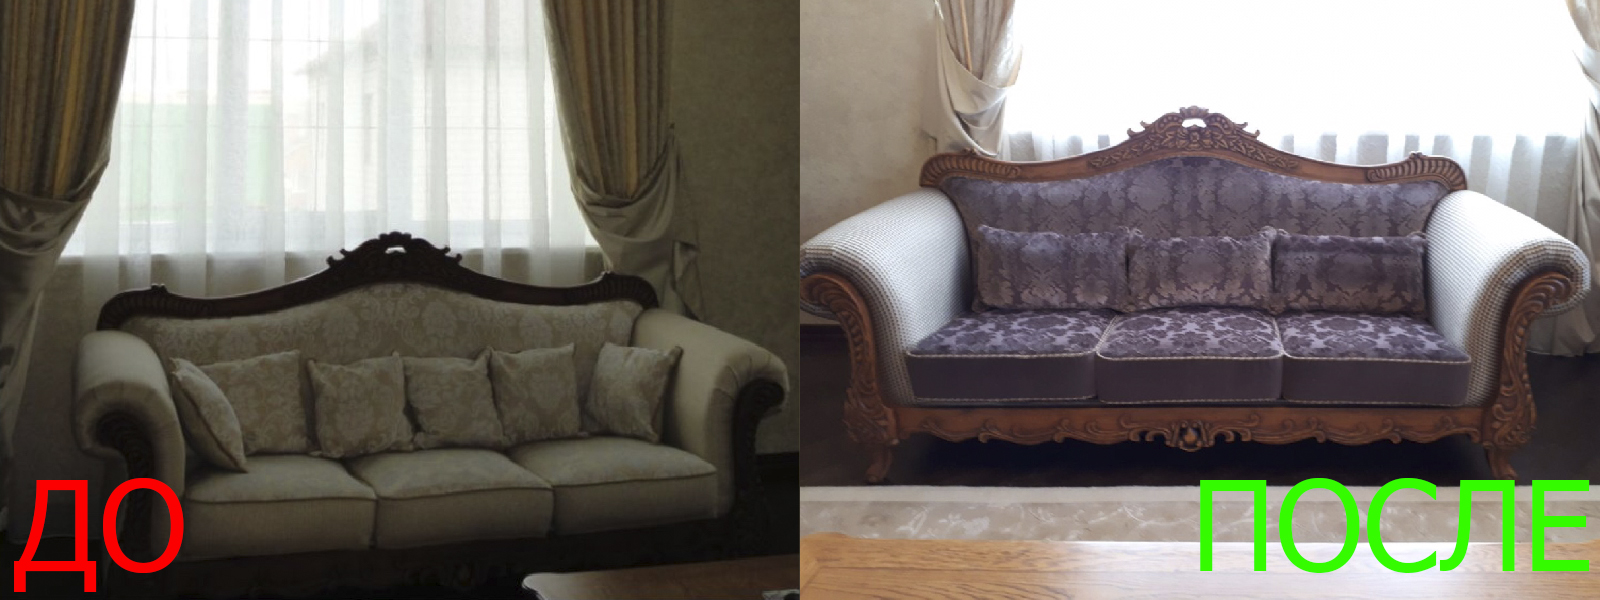 Обшивка мебели на дому в Краснодаре расчет цены по фото, высокое качество тканей